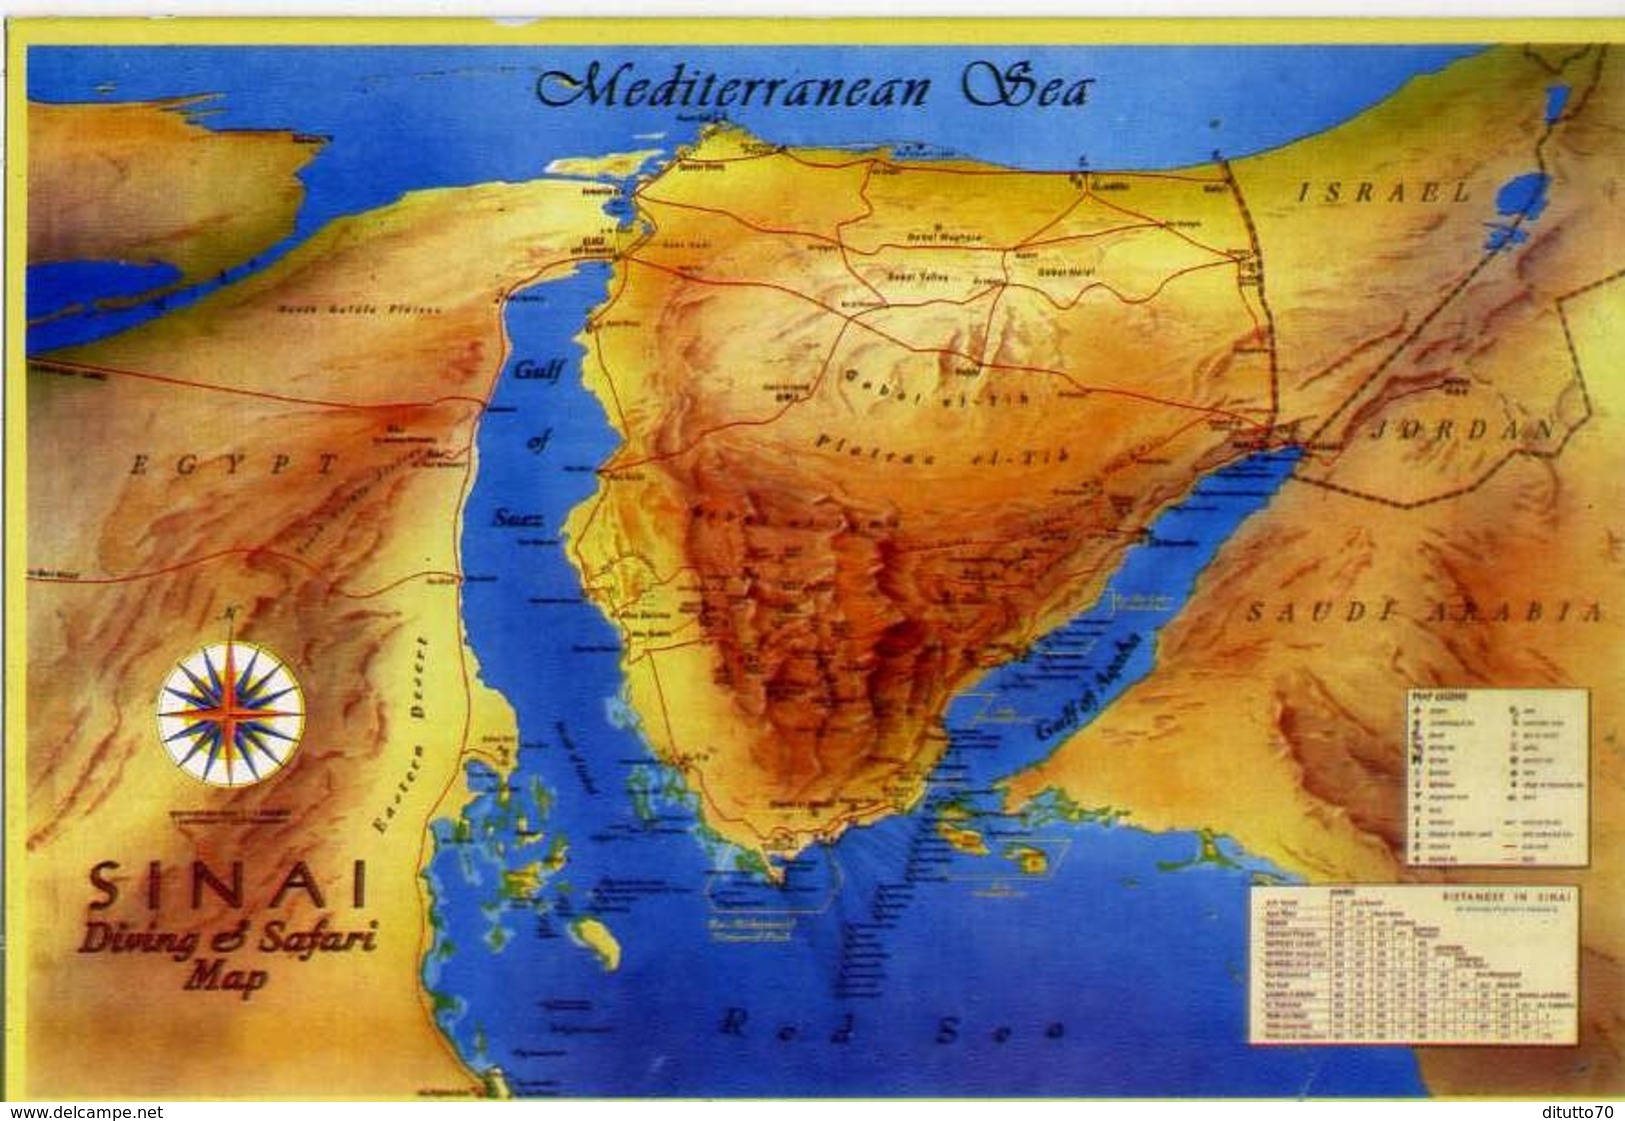 Sinai - Diving E Safari Map - Formato Grande Viaggiata – E 14 - Non Classificati